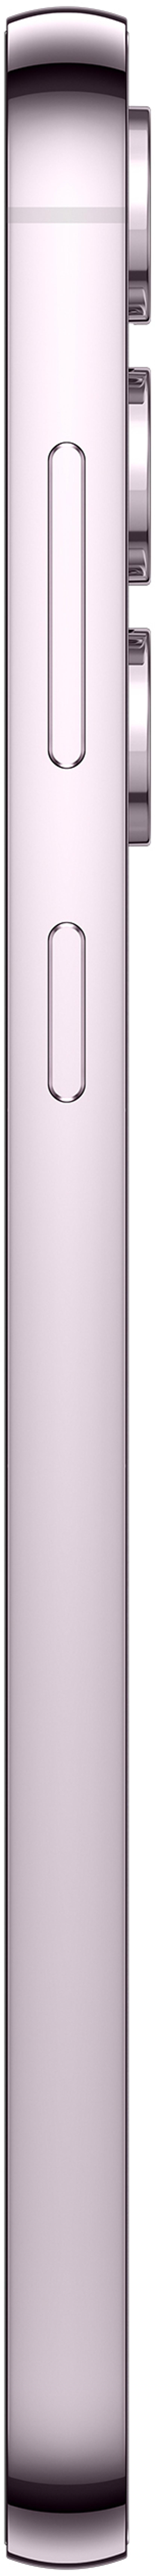 Samsung Galaxy S23+ 512GB Dobbelt-SIM Lavendel